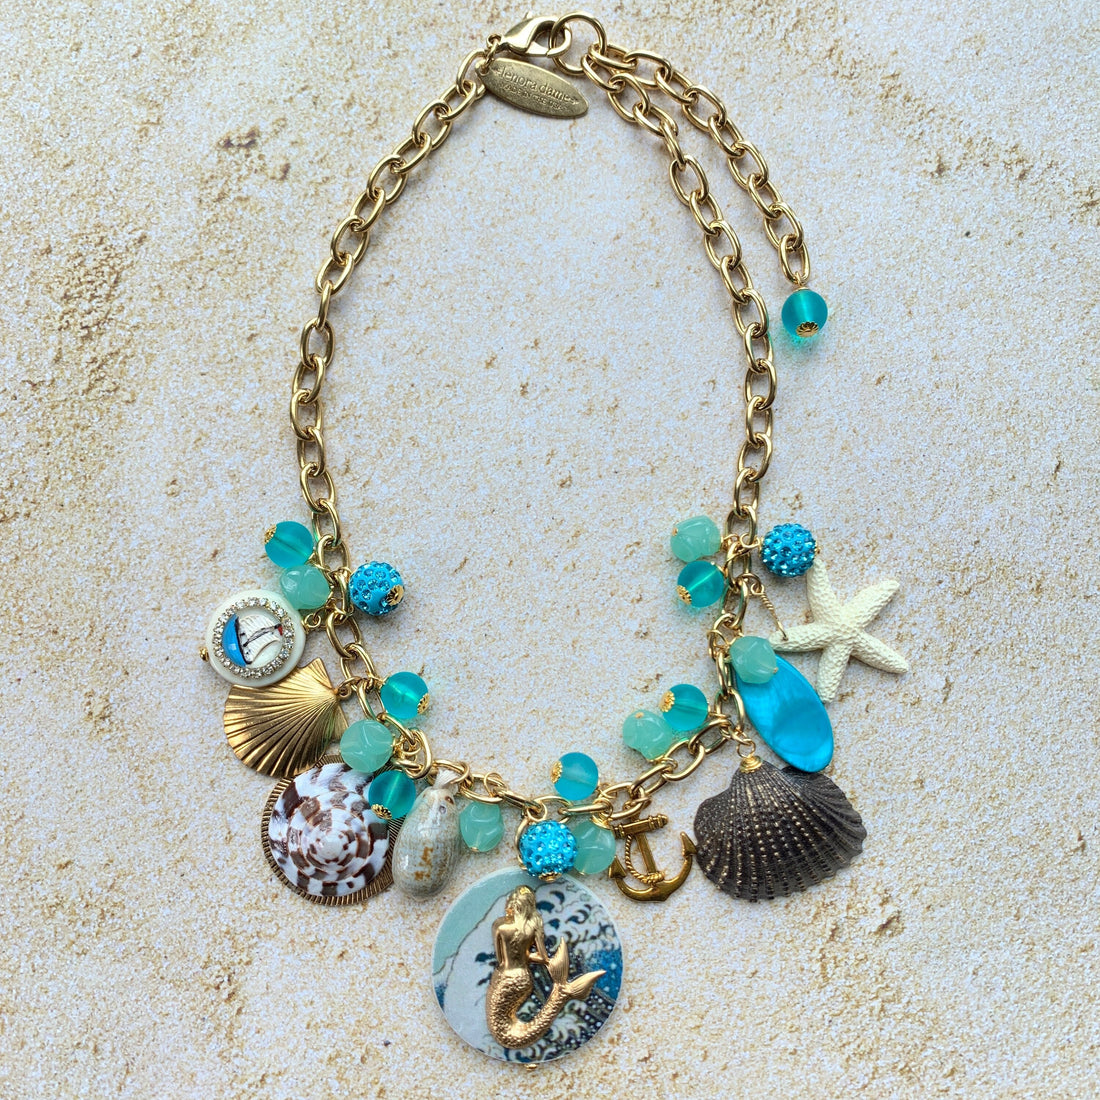 Lenora Dame Ocean Blue Mermaid Necklace